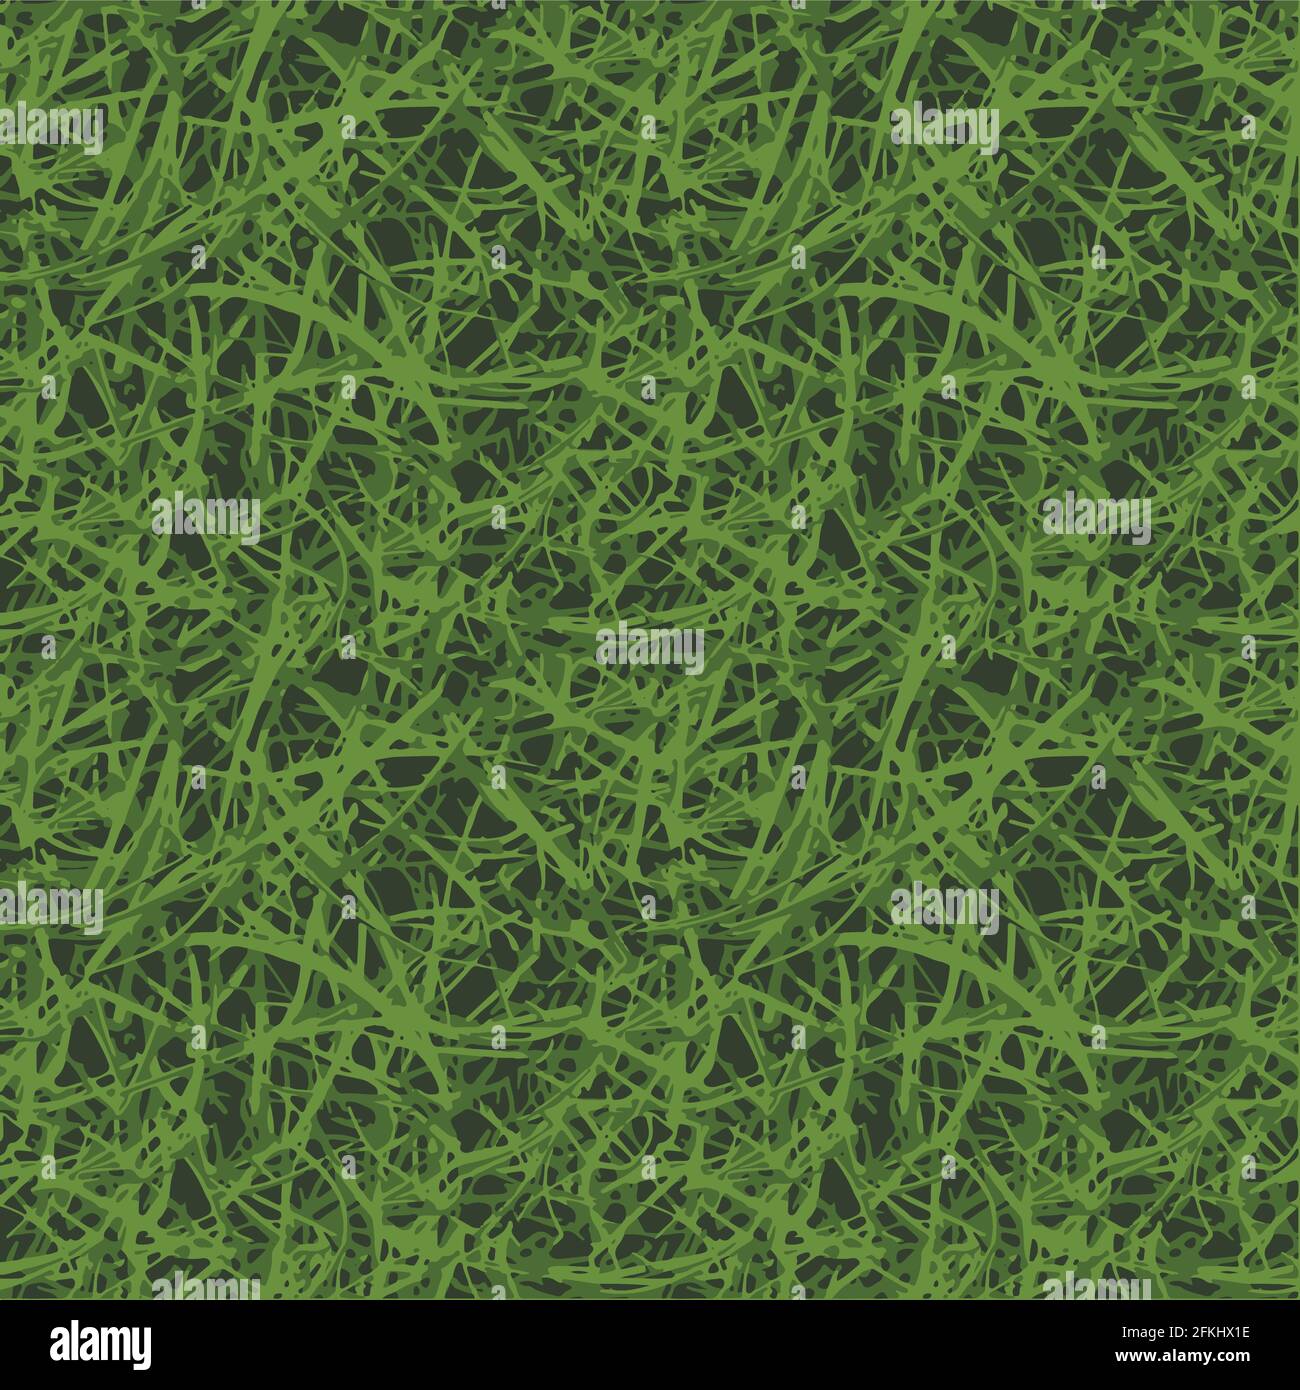 grass seamless pattern Stock Vector